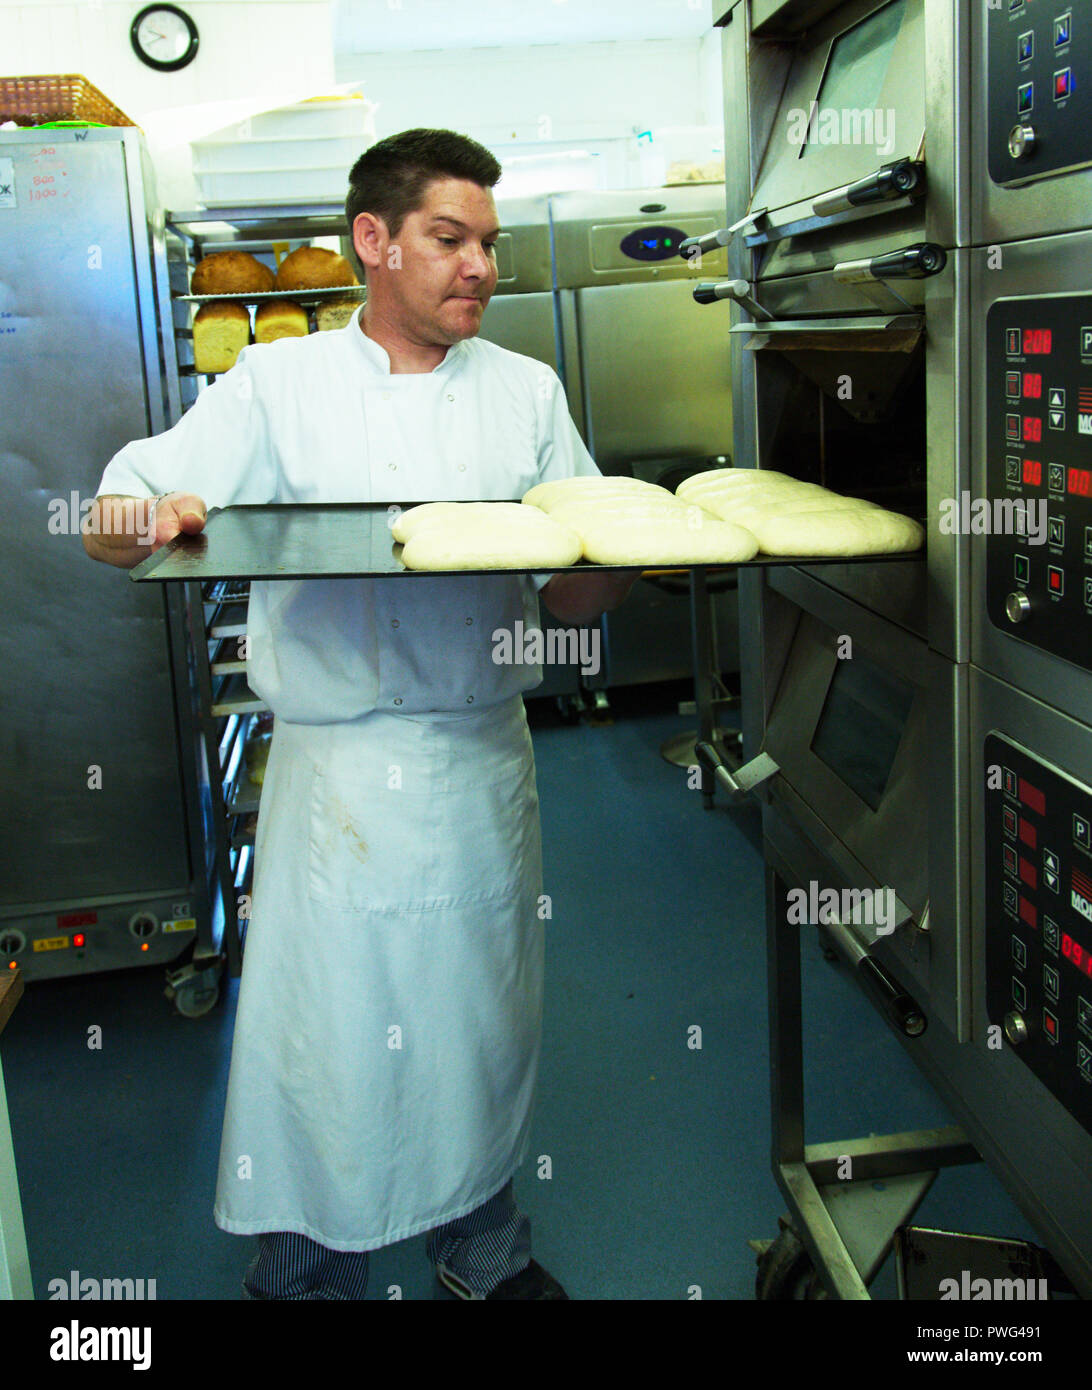 Baker Inverkehrbringen Teig Brot im Ofen. Stockfoto